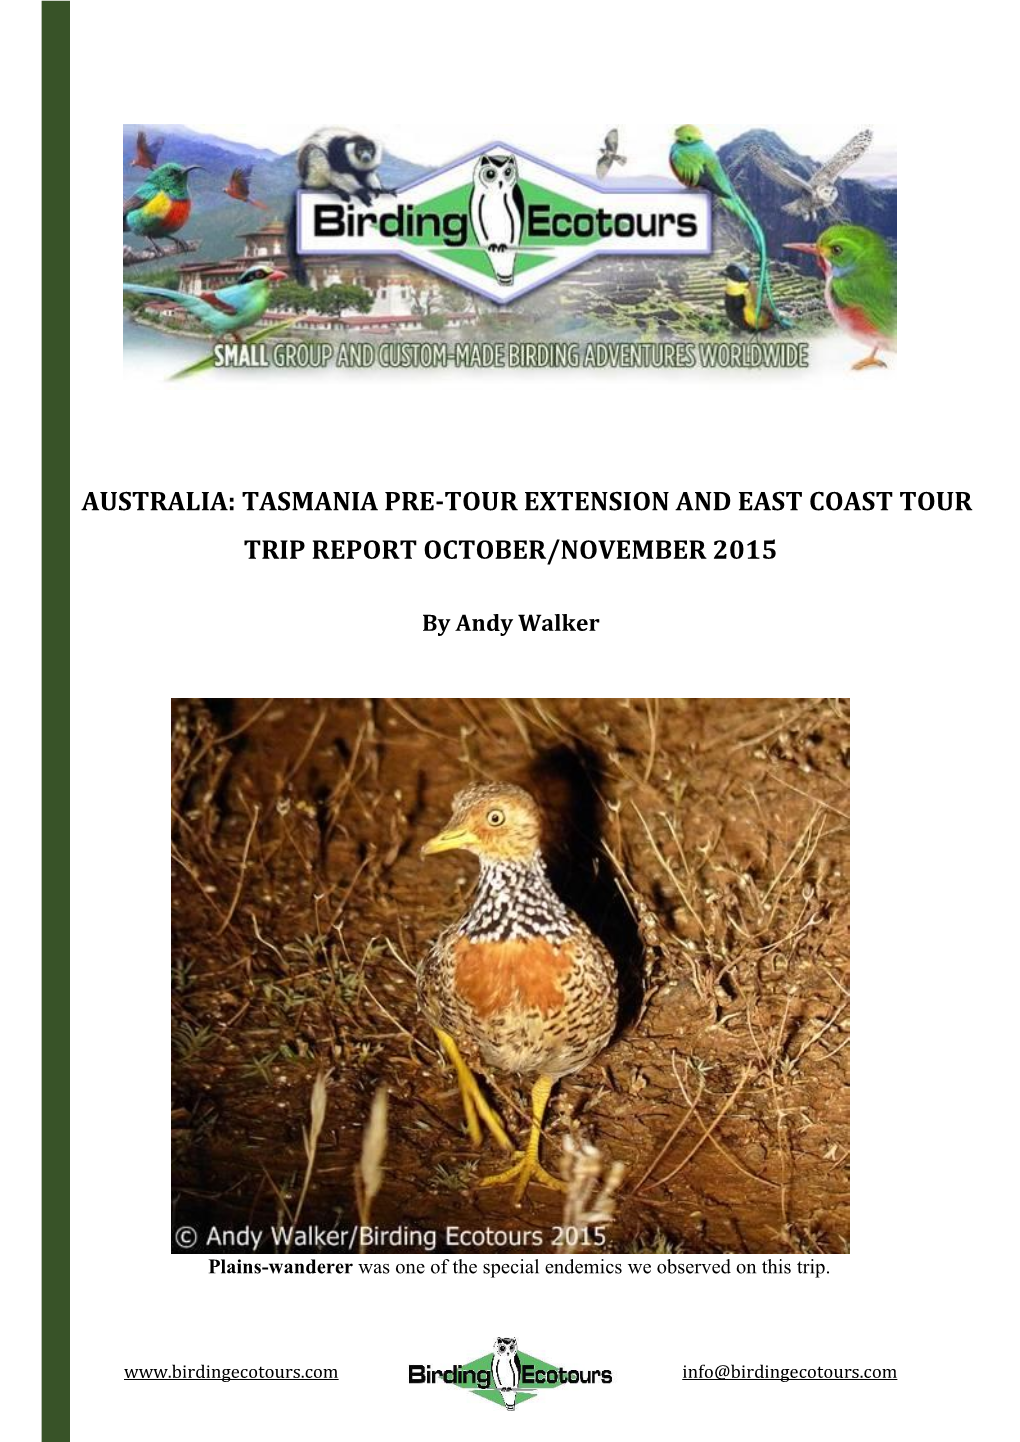 Australia: Tasmania Pre-Tour Extension and East Coast Tour Trip Report October/November 2015